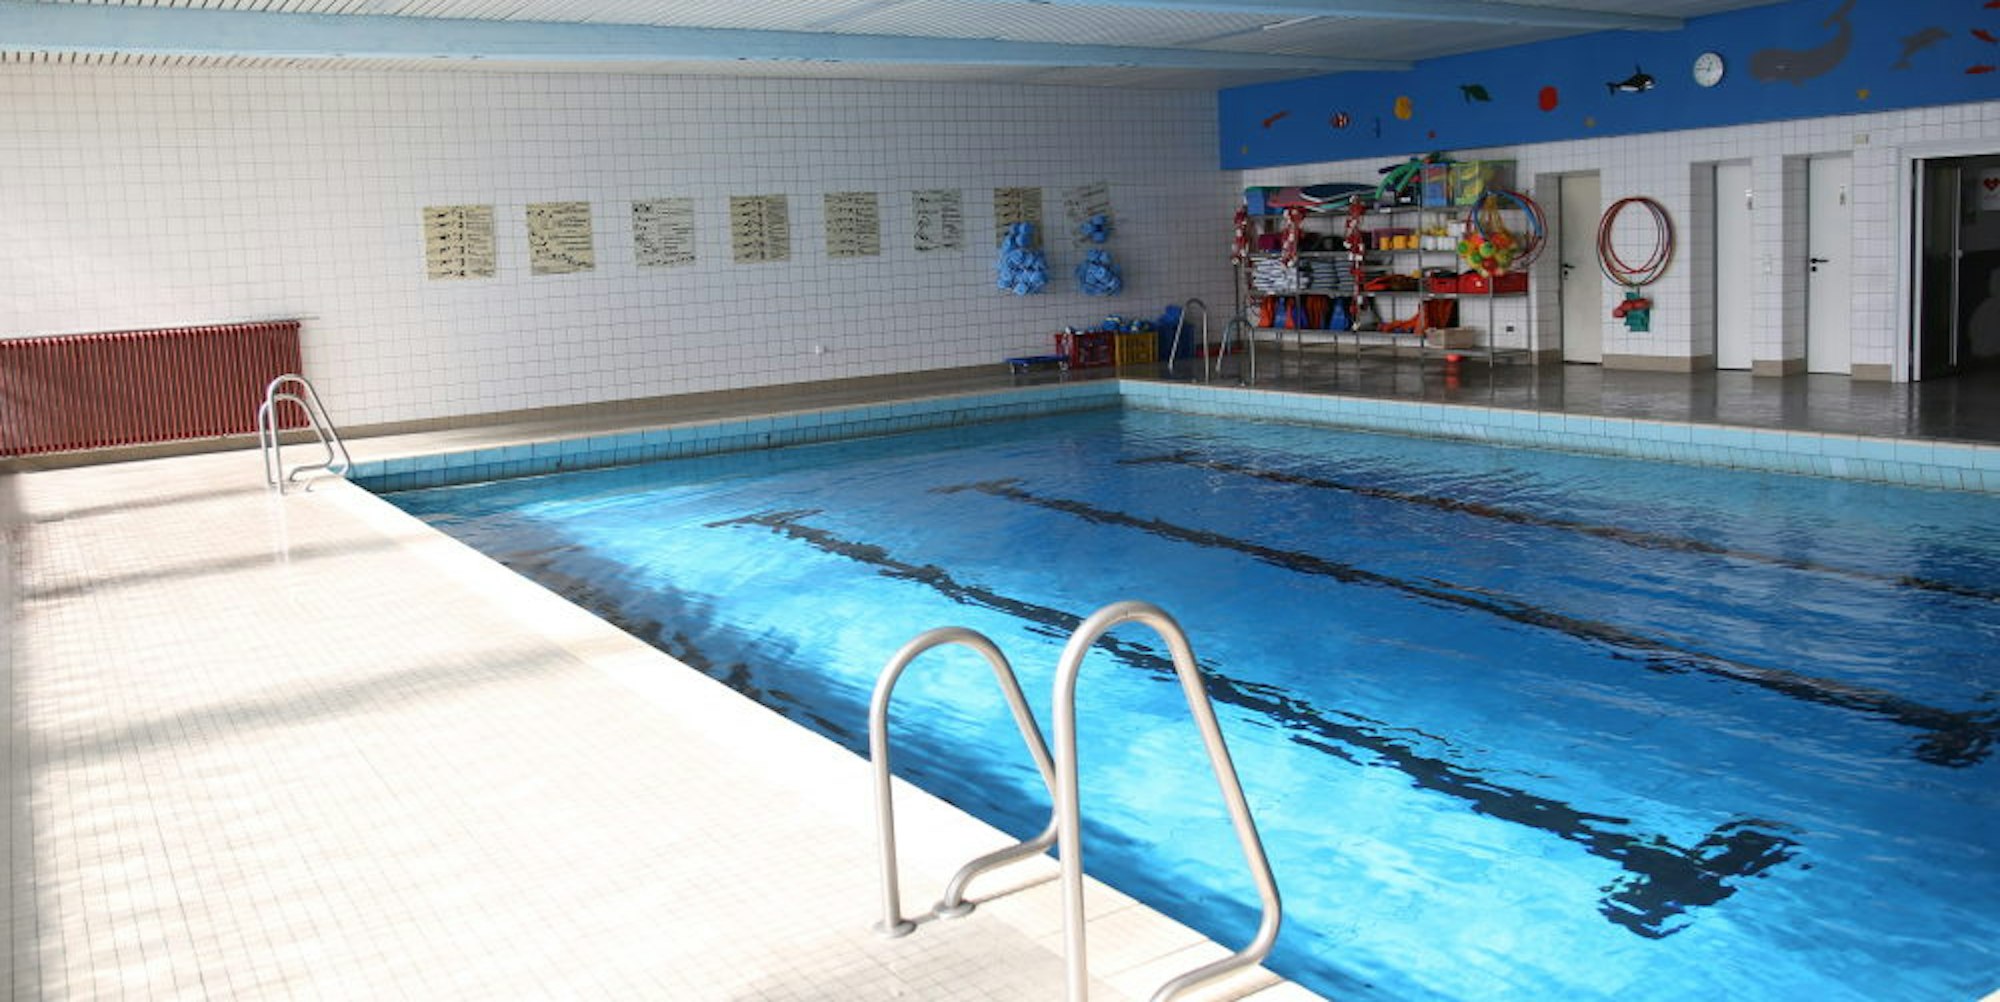 Das Schwimmbecken sieht intakt aus, ist aber genauso sanierungsbedürftig wie die Technik.